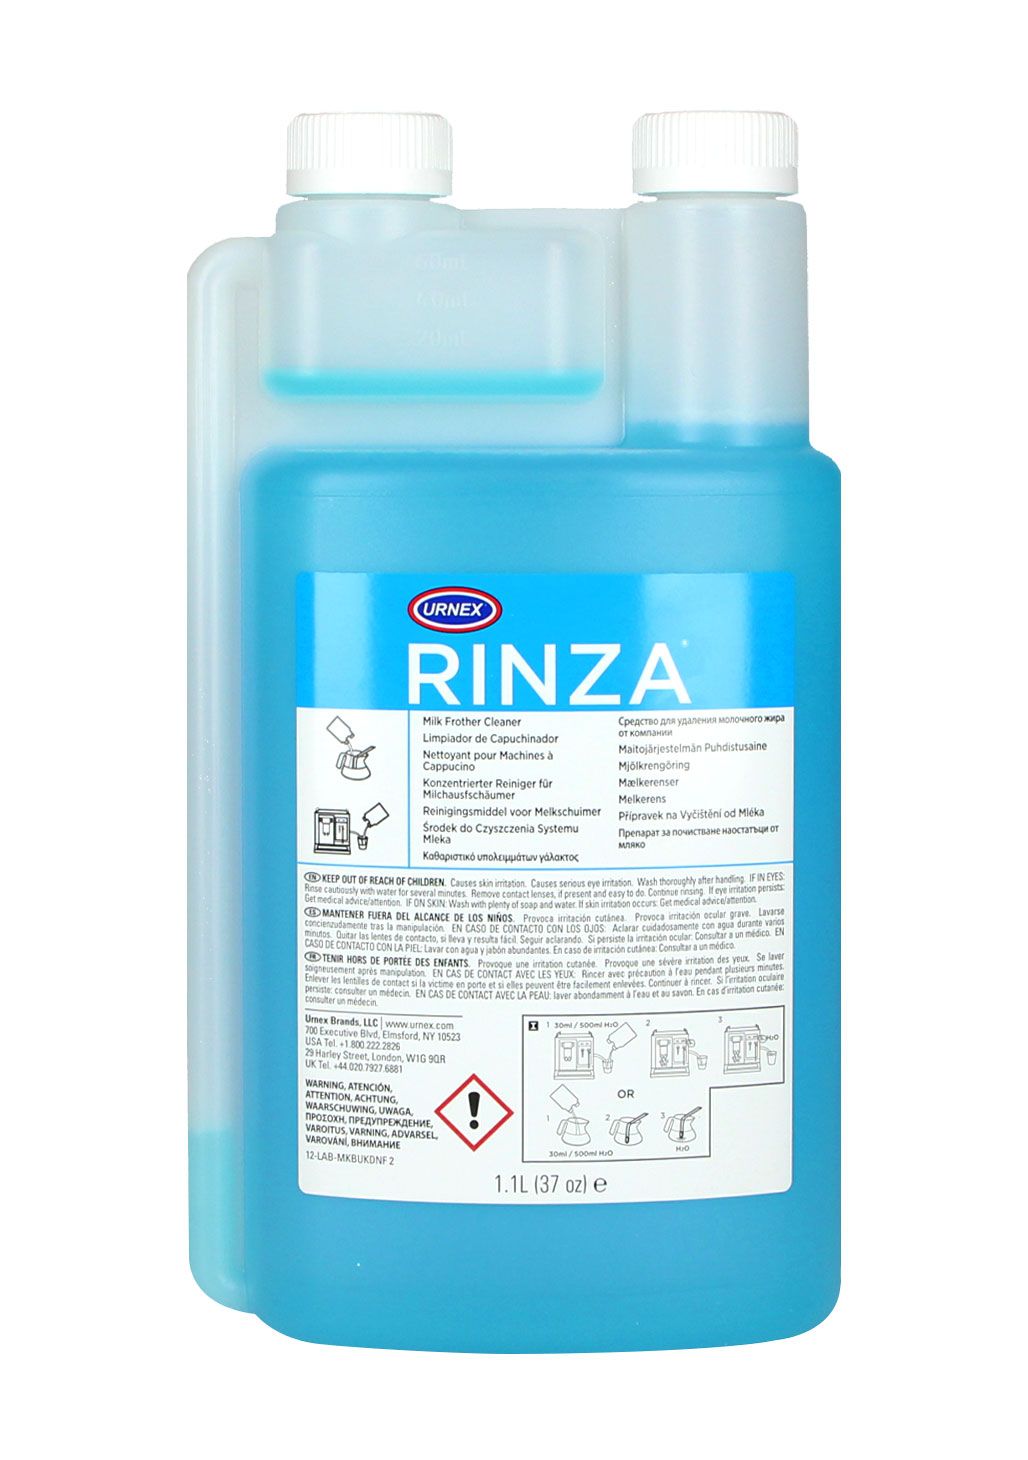 Płyn do czyszczenia dysz i systemu mleka Urnex Rinza 1100ml